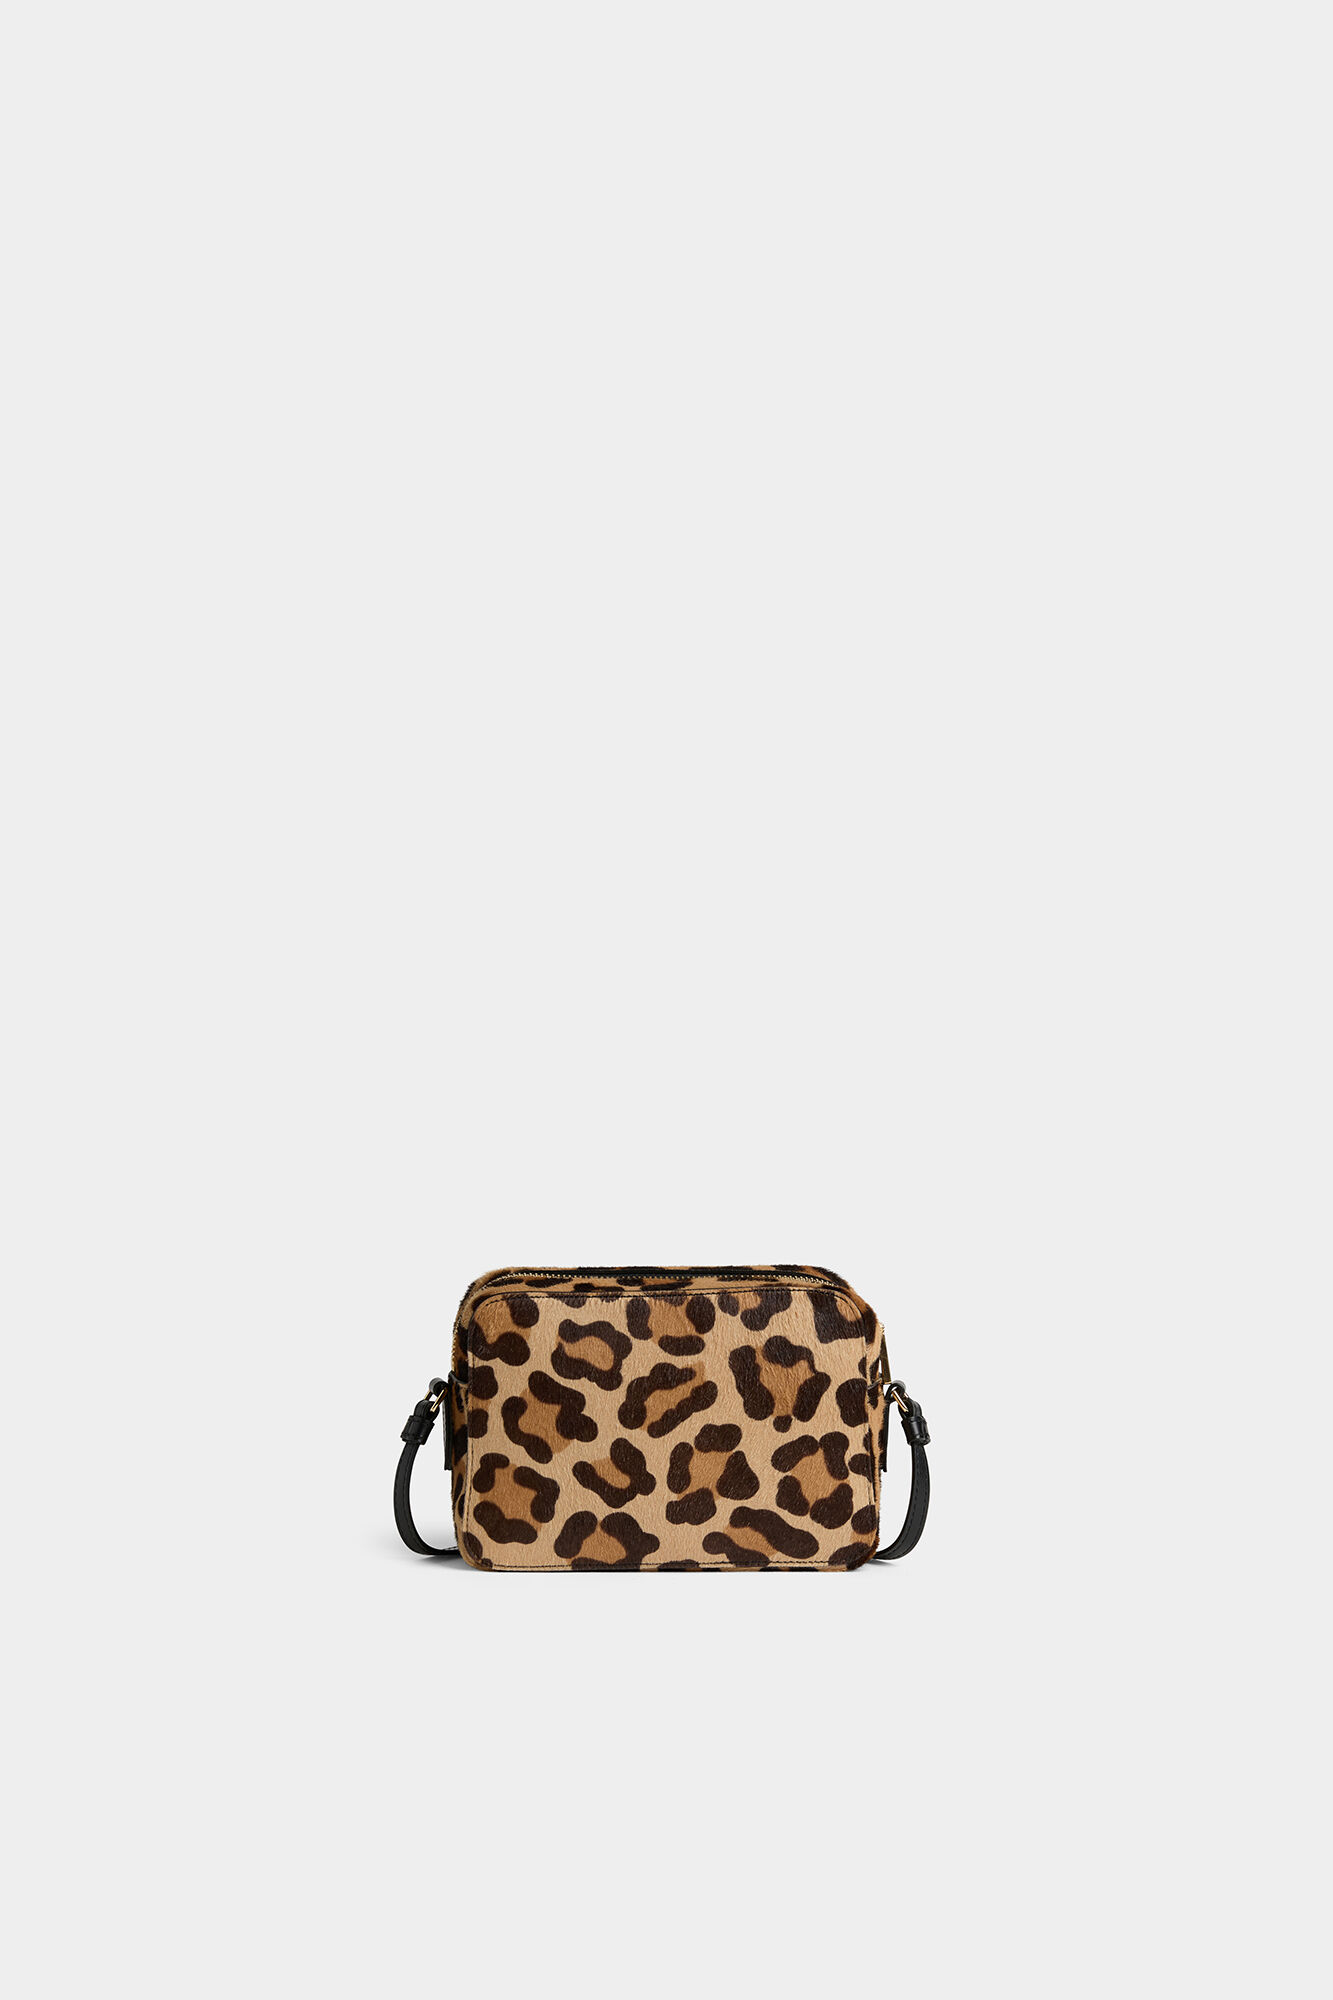 Jen & Co. Leopard Print Fur Crossbody Purse | eBay